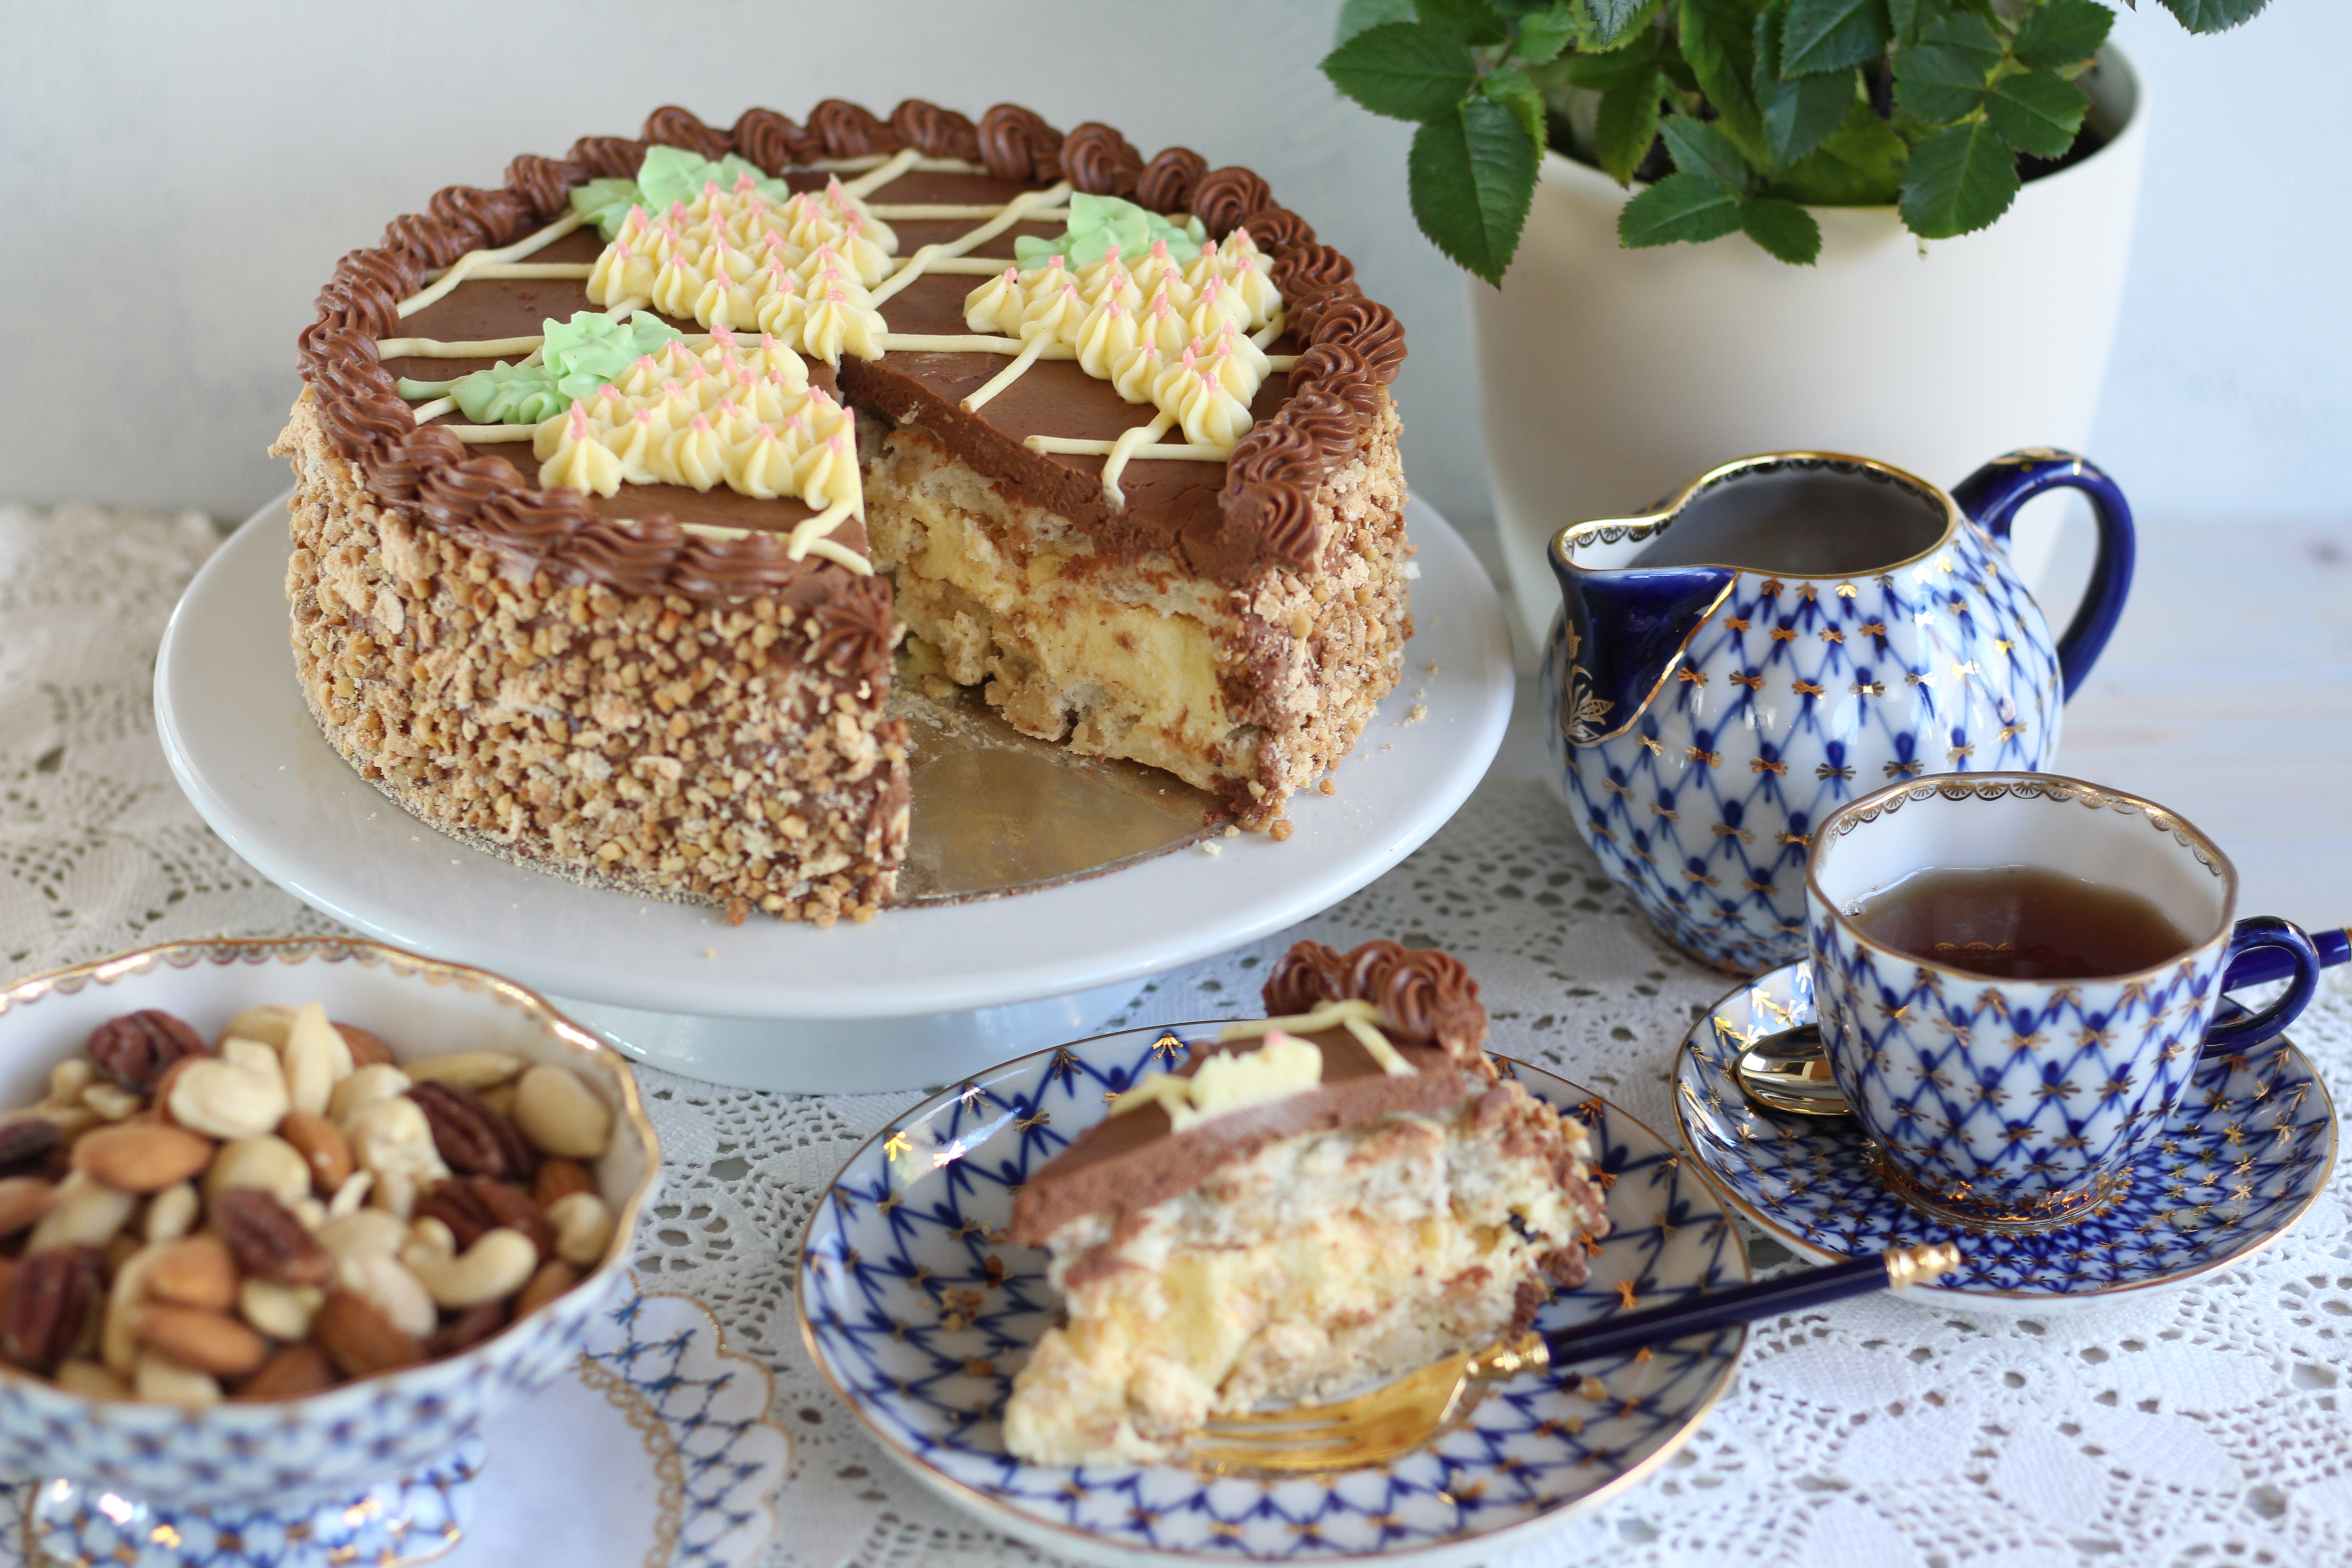 Der ukrainische Torten-Klassiker: Kiewer Torte! Unfassbar lecker, knusprig und cremig zugleich! Rezept und Video von Sugarprincess